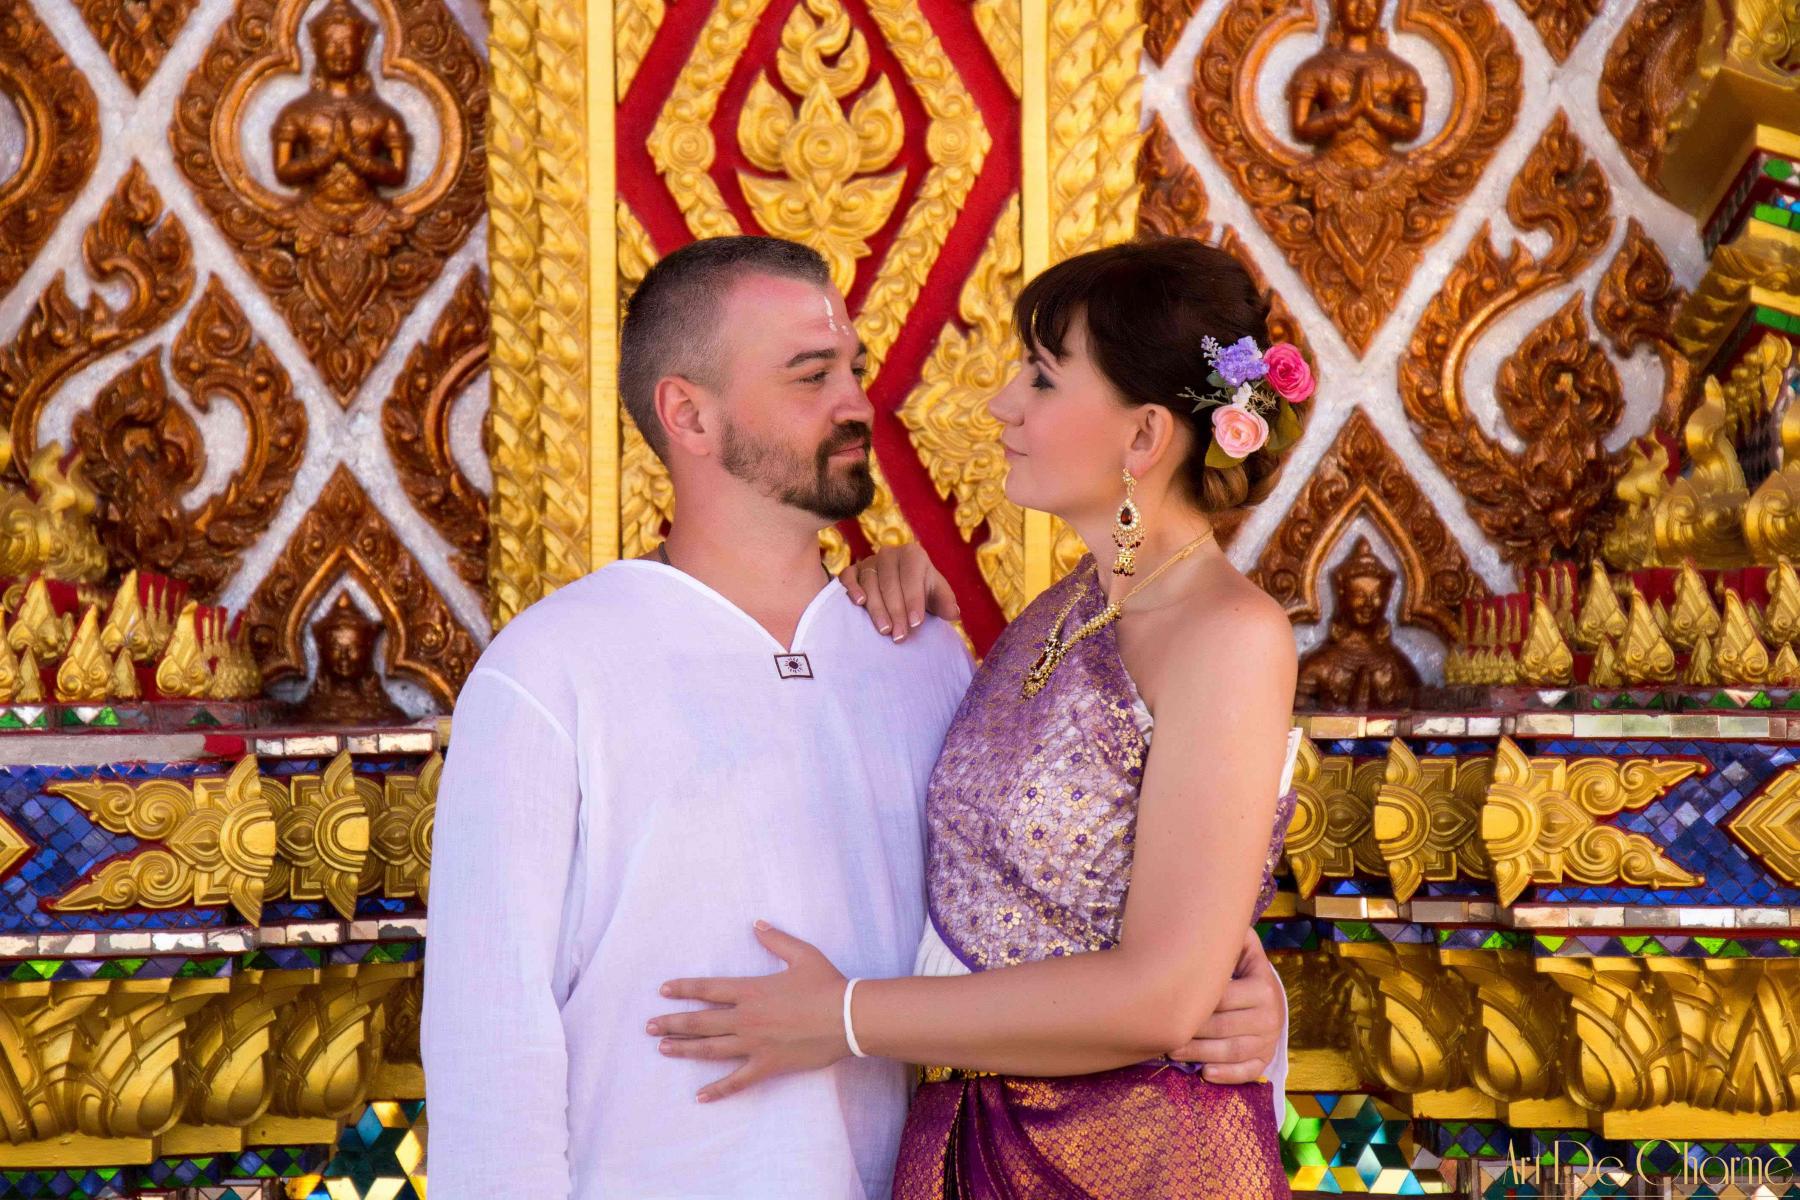 Свадьба в Паттайе Таиланд от организатора - фото Тай-Онлайн (154)